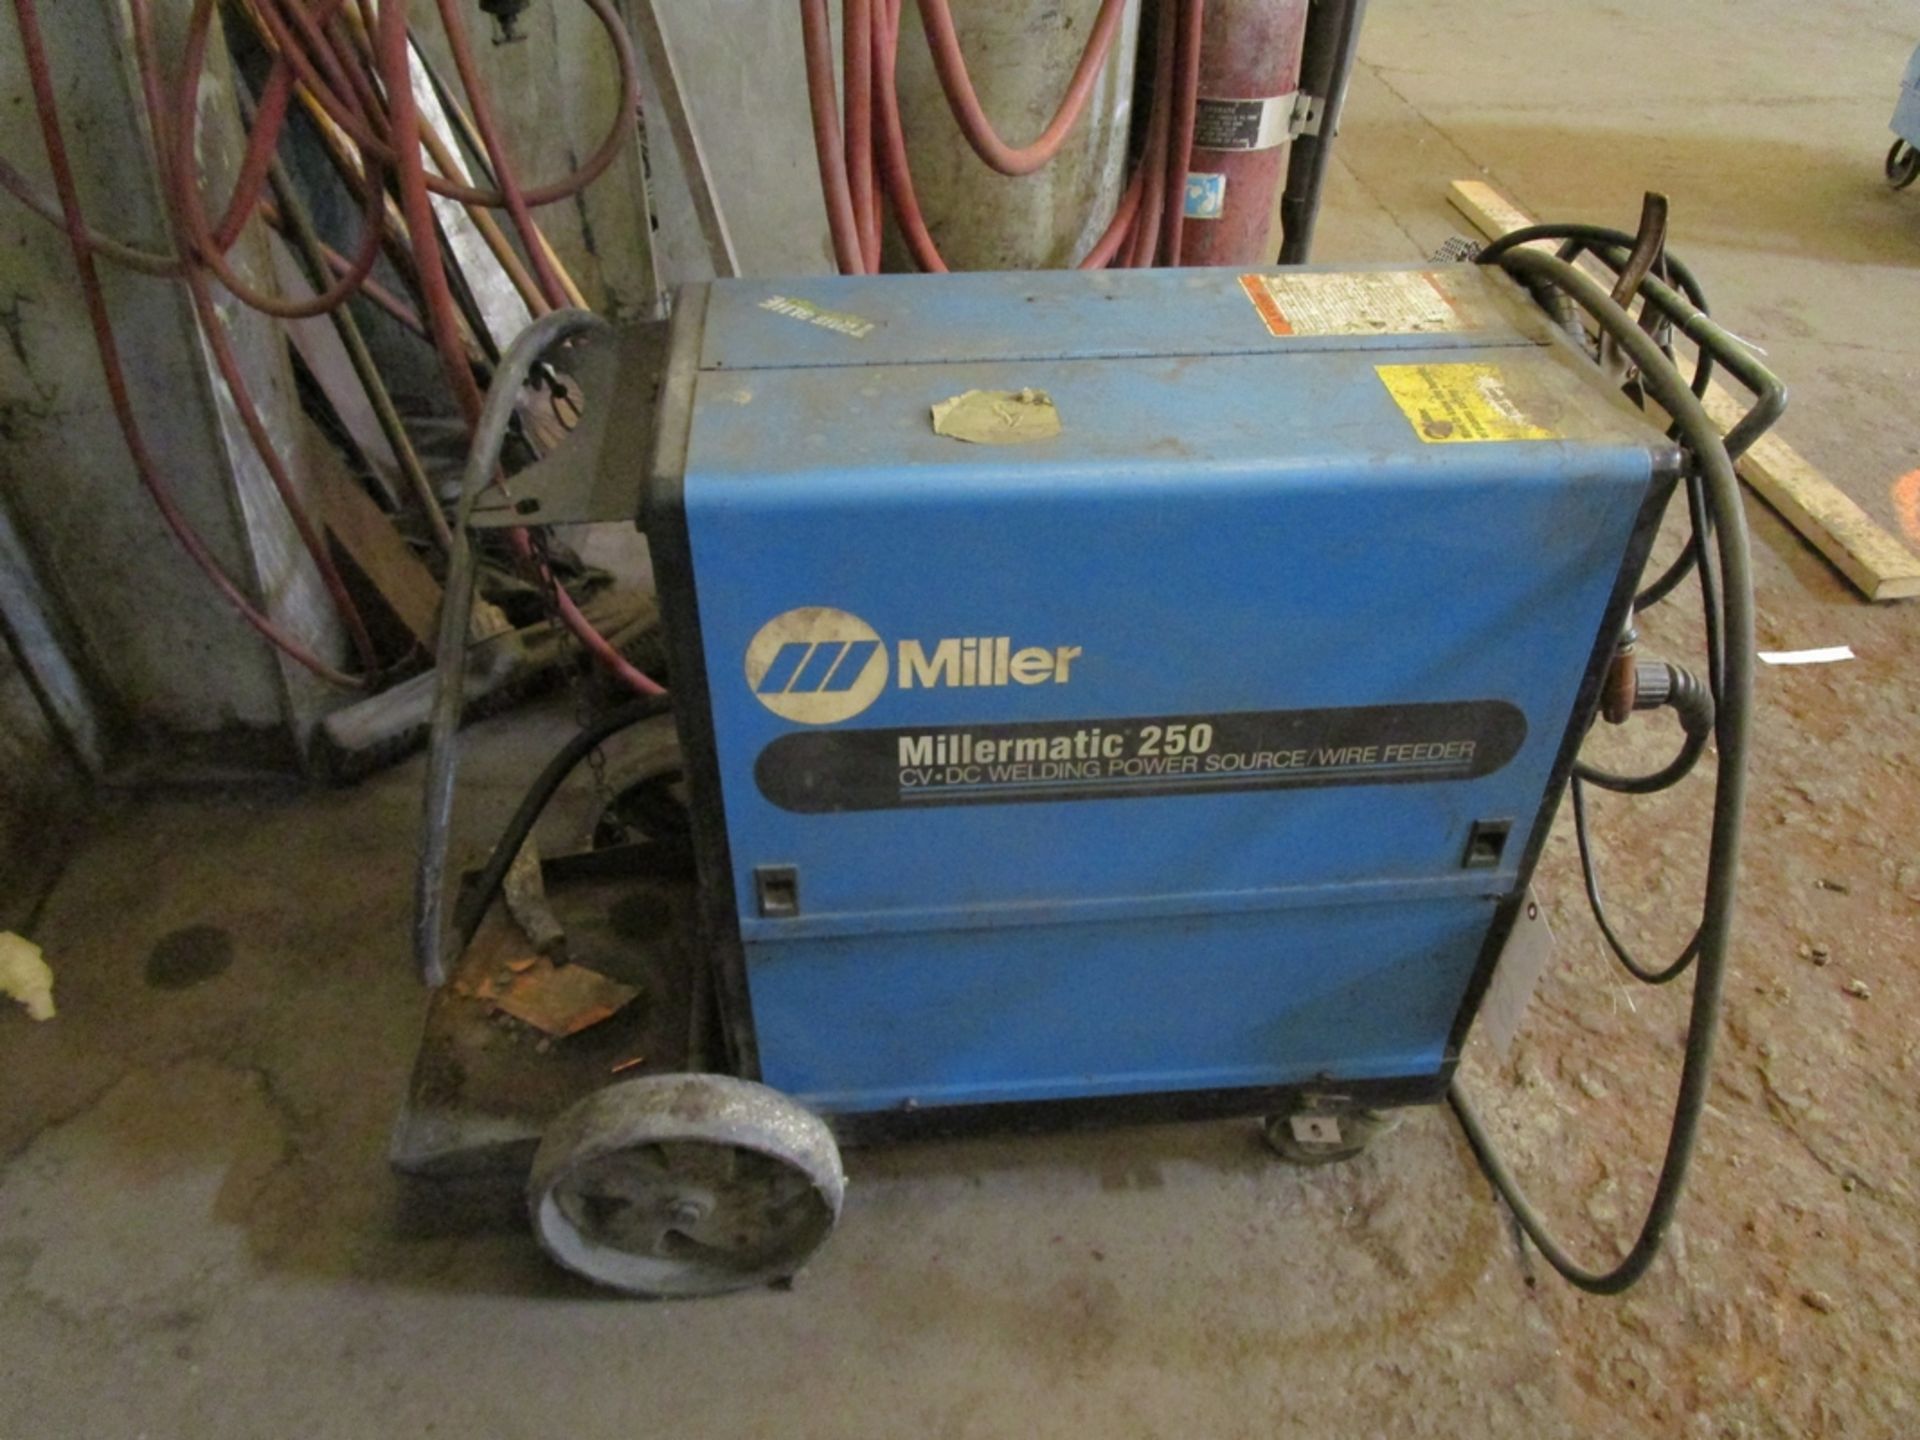 Miller Millermatic 250 250-amp Mig Welder, S/N KJ012032 - Image 5 of 5